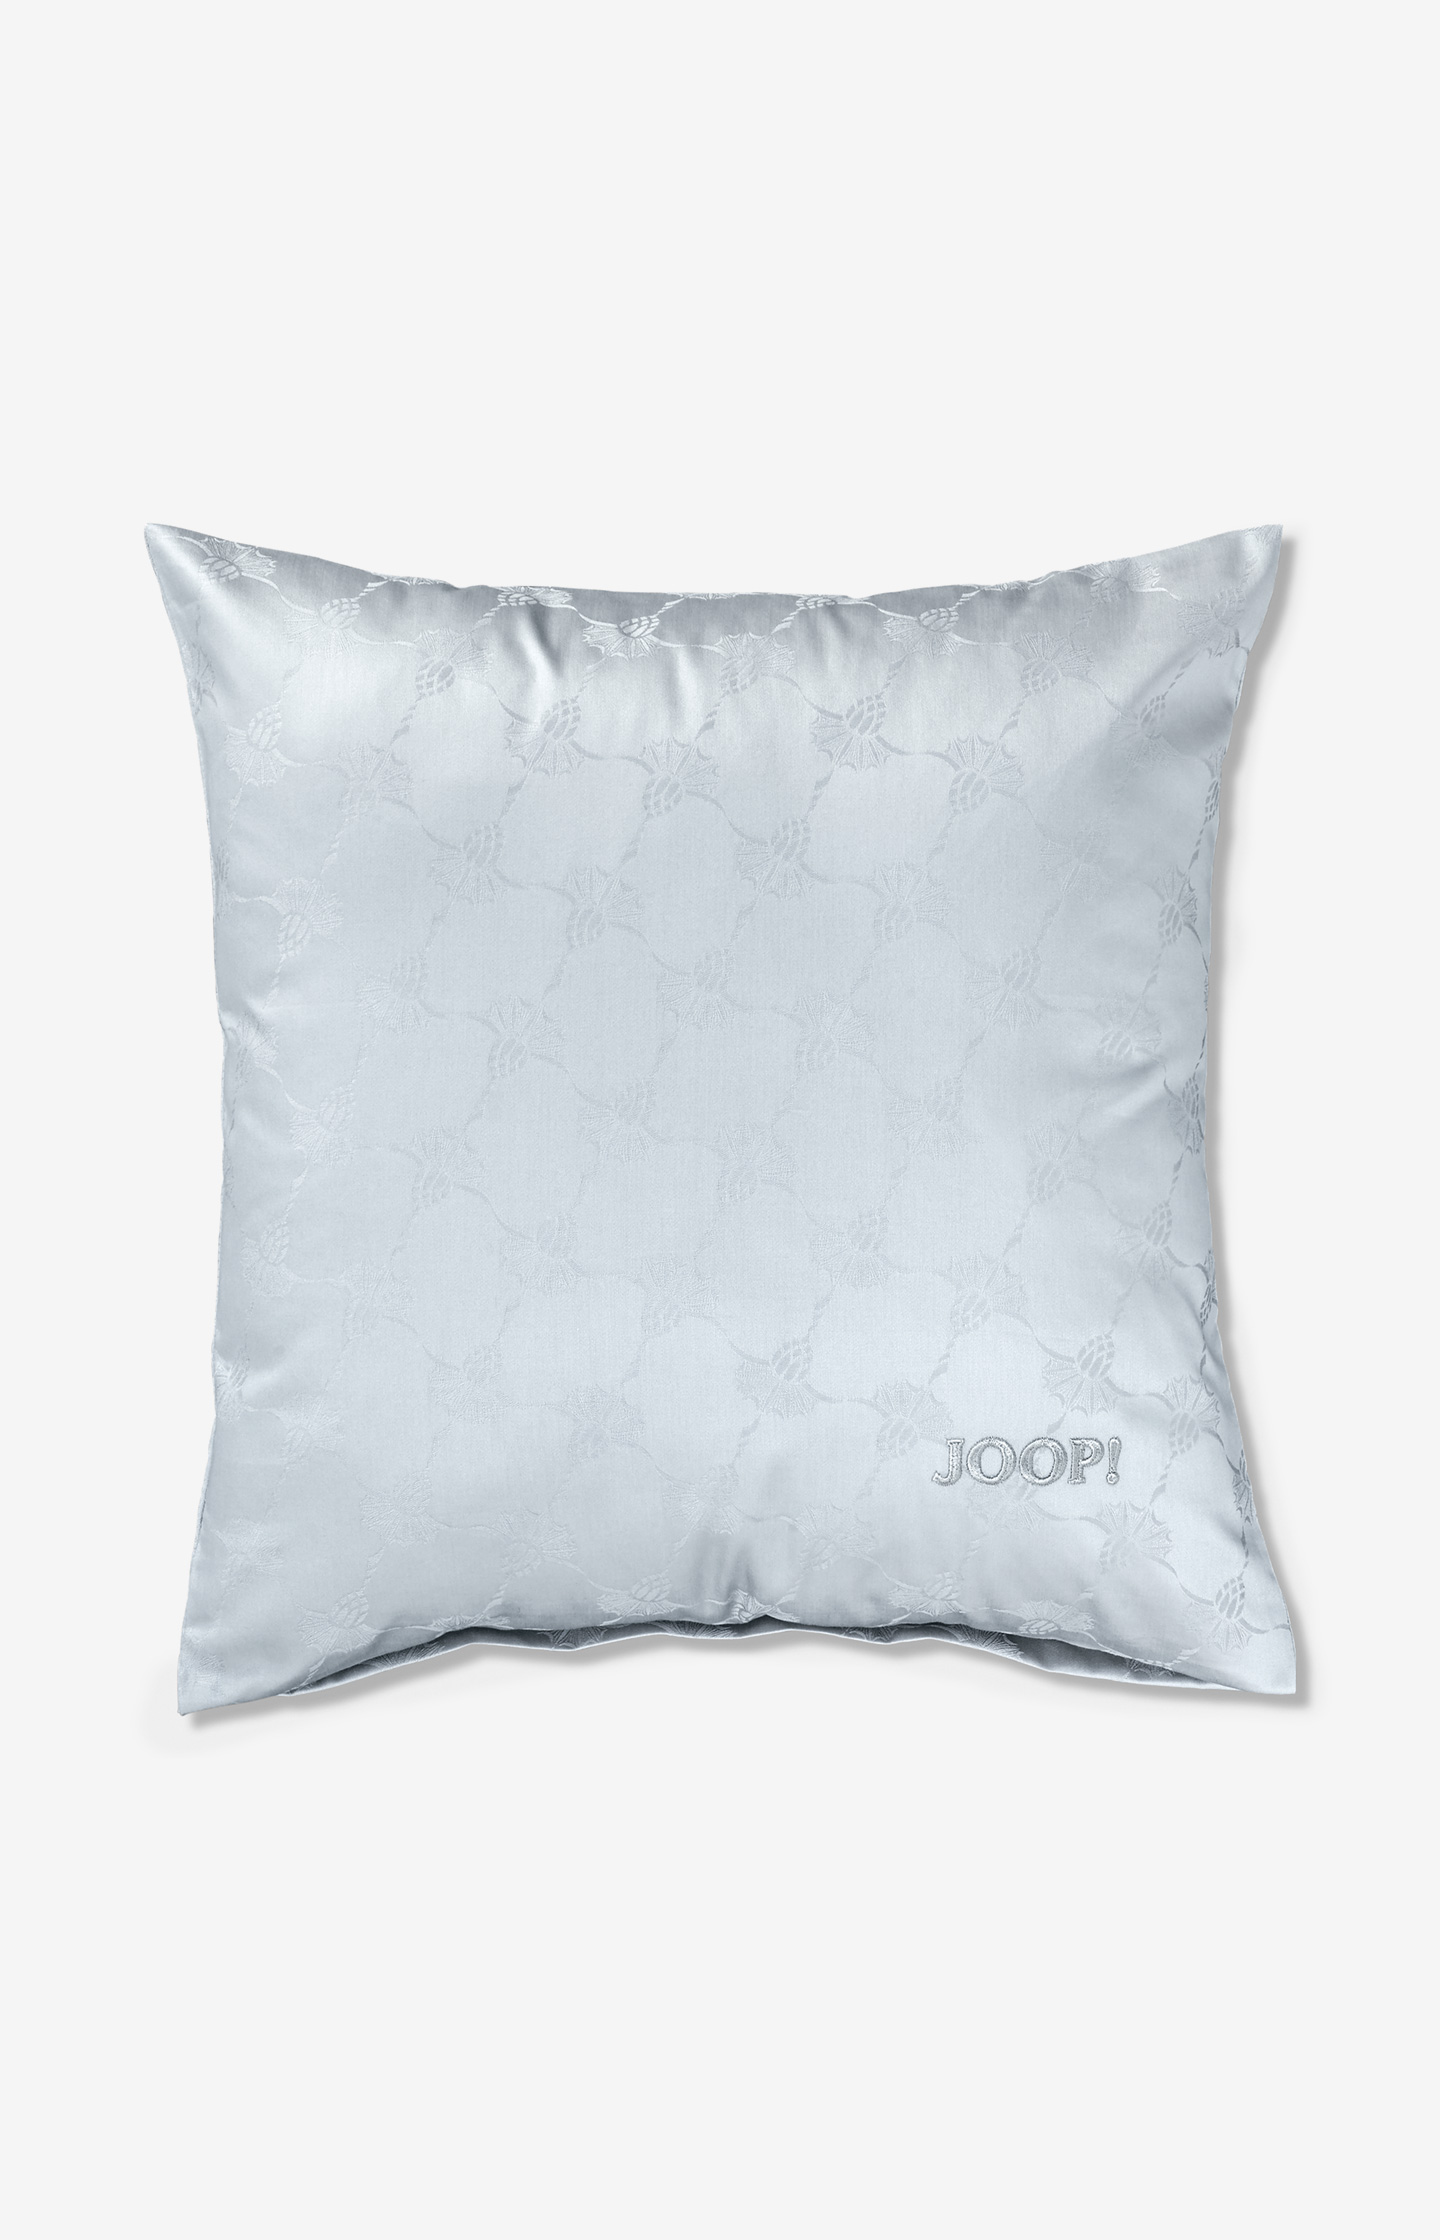 JOOP! Cornflower, im Bettwäsche Online-Shop - Silber